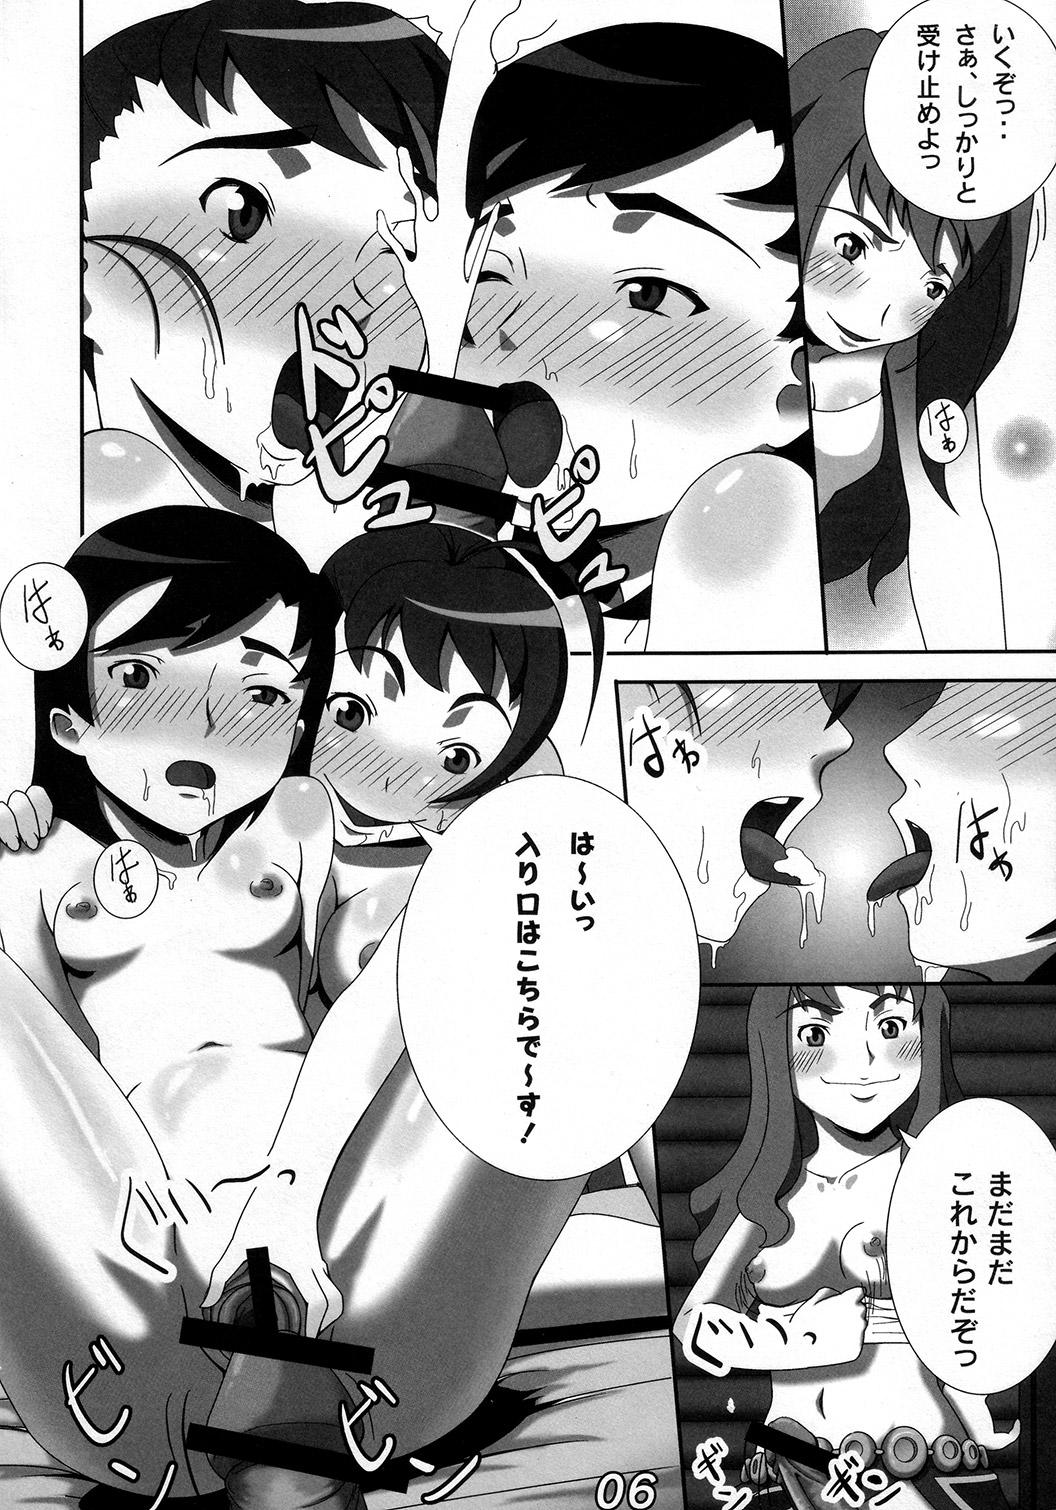 Pasivo Otome ☆ Chick - Mai-otome Lesbiansex - Page 5